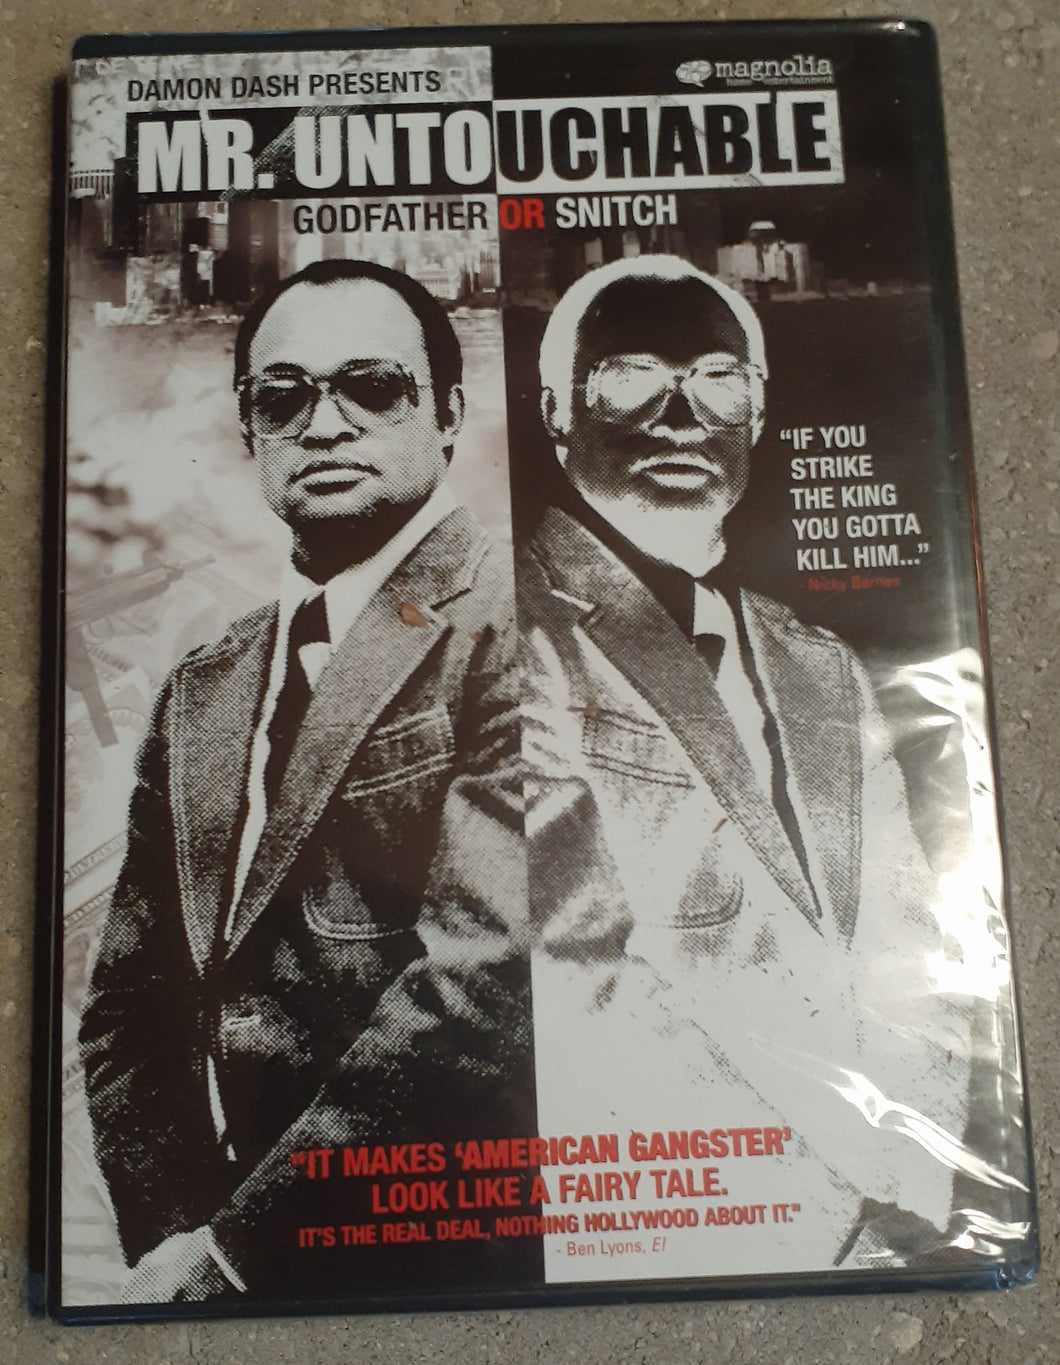 Mr. Untouchable DVD Damon Dash Presents. Kargo Fresh